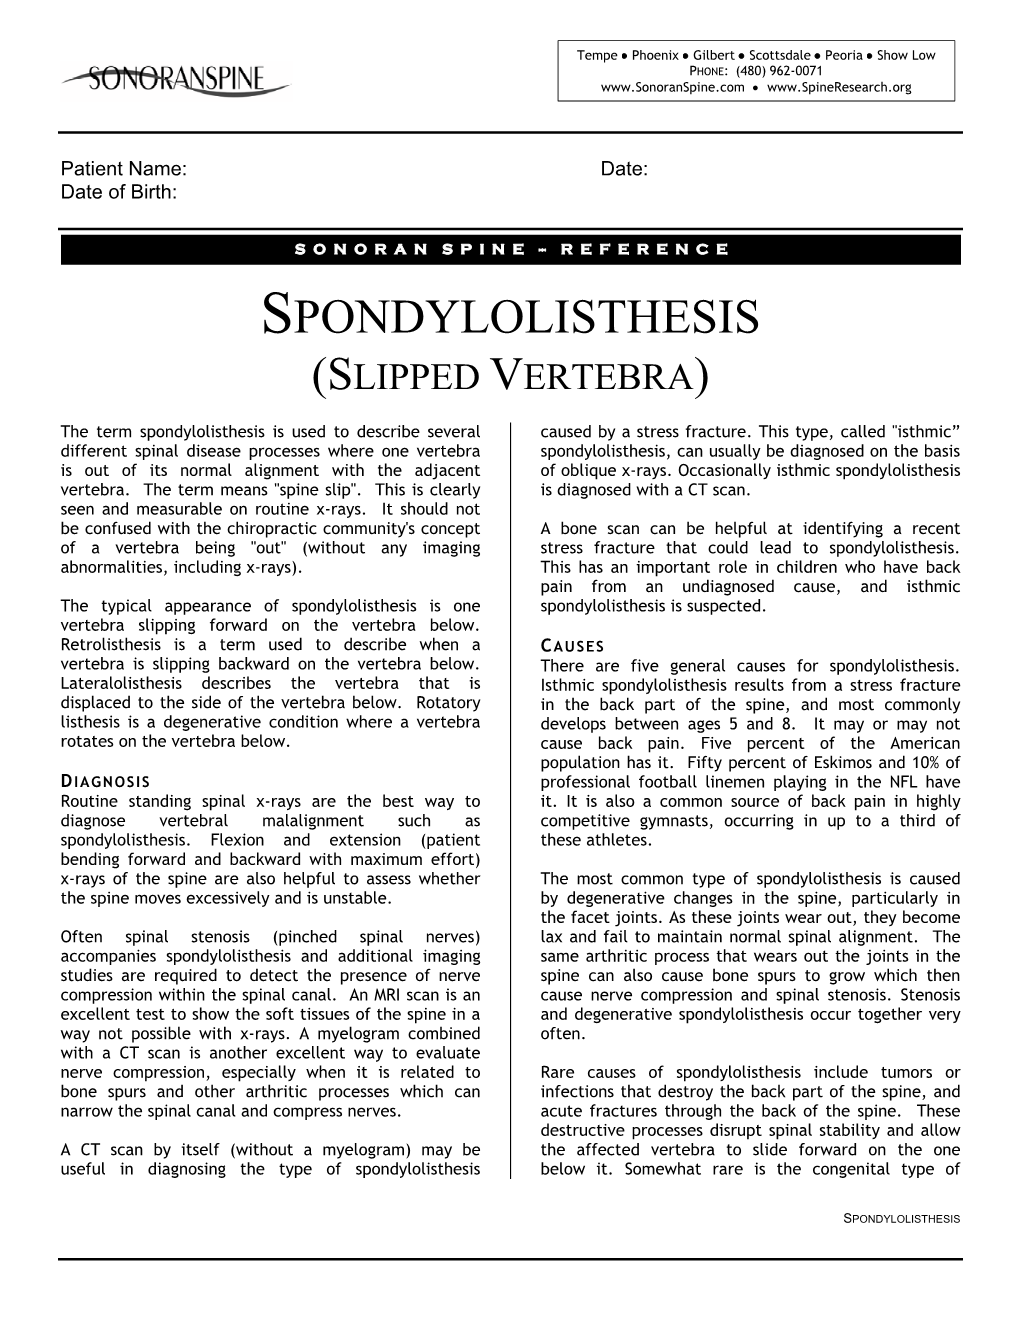 Spondylolisthesis (Slipped Vertebra)